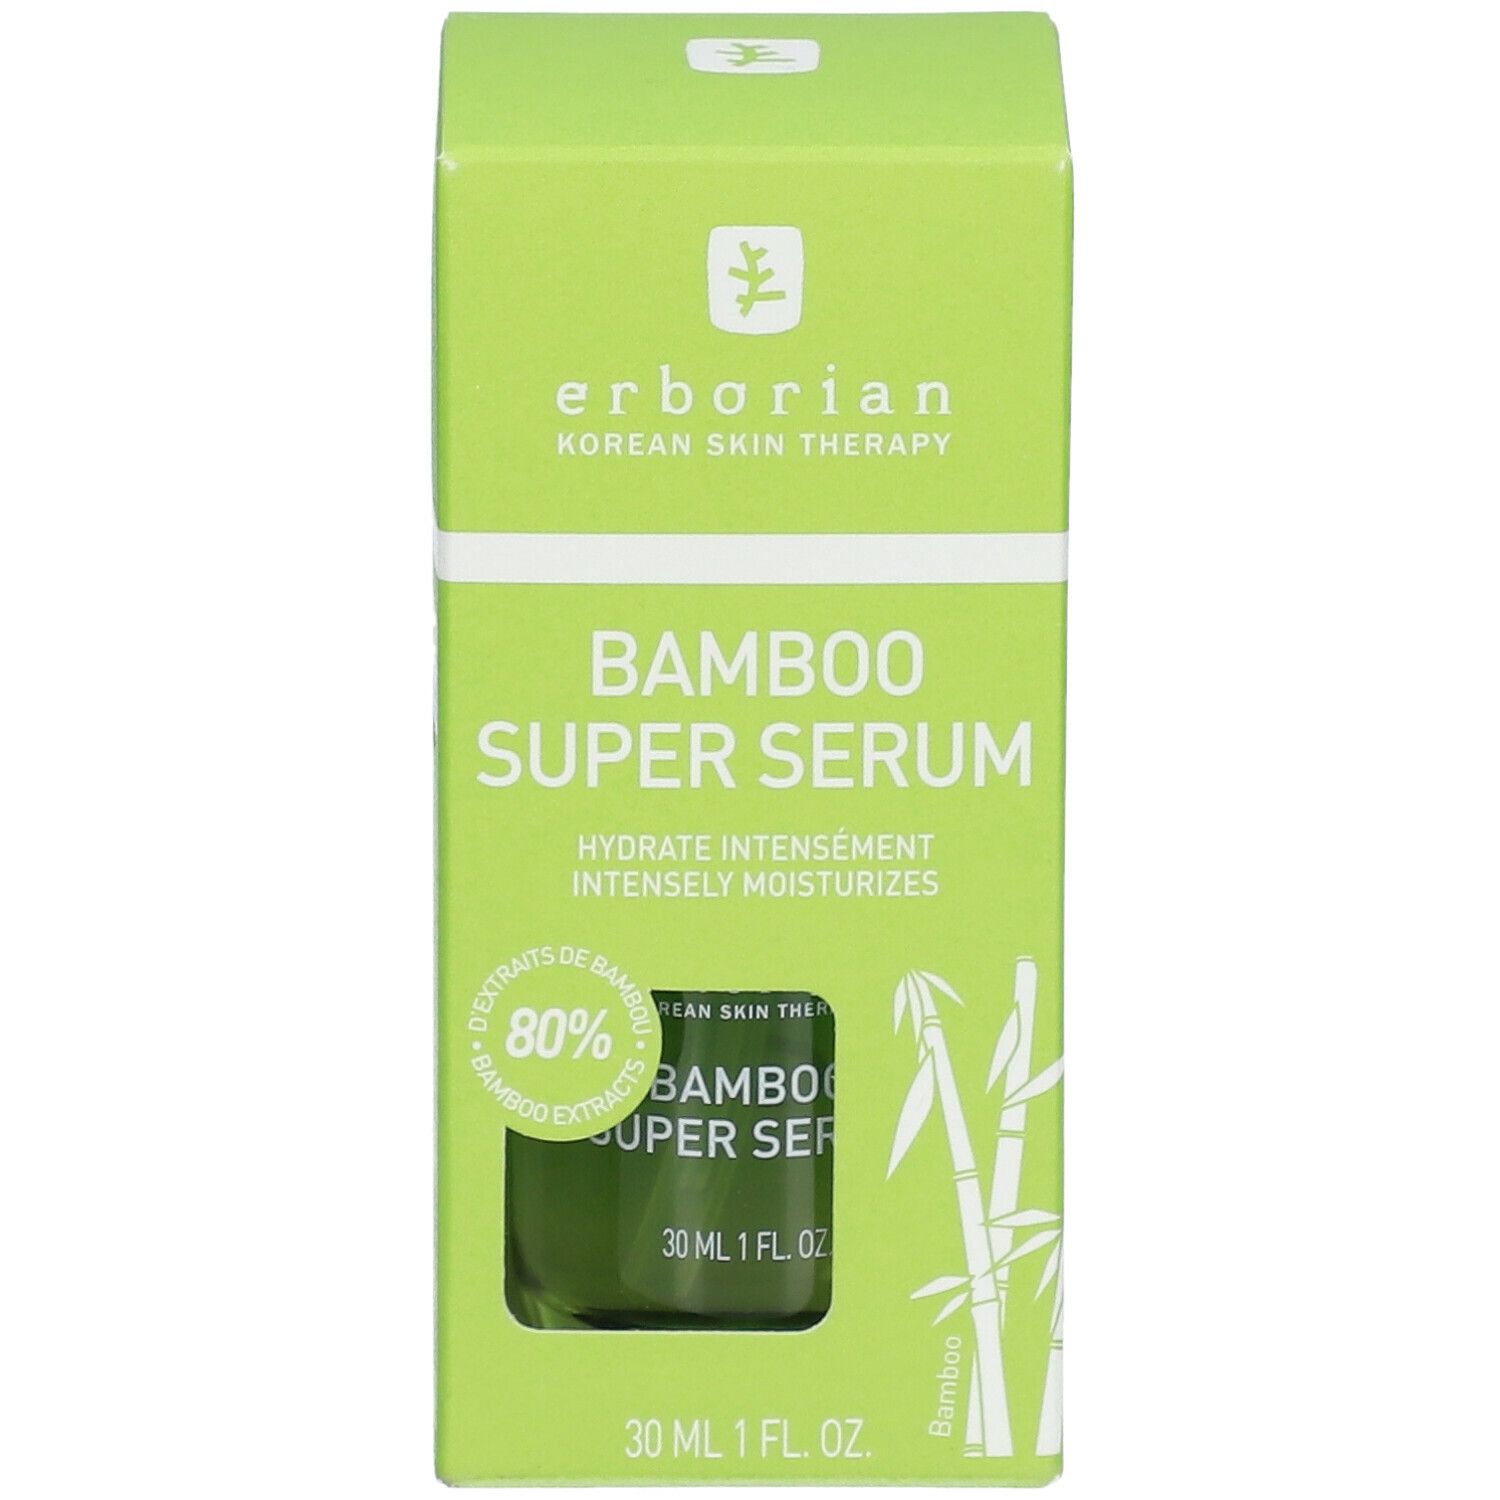 erborian Bamboo Super Sérum - Sérum Hydratant intensiv